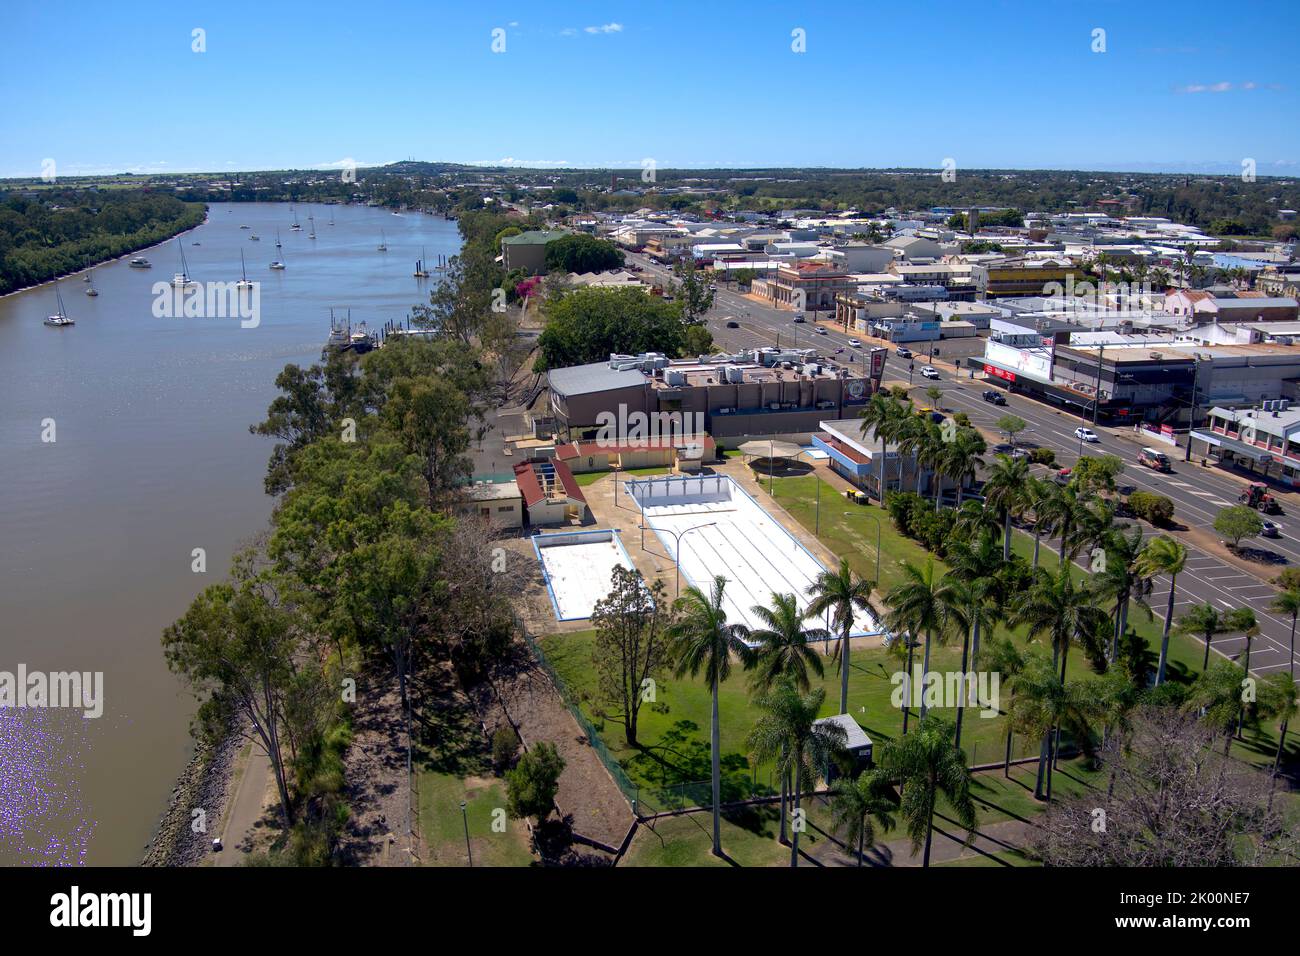 Vista aérea de la piscina ANZAC Memorial en Quay Street Bundaberg Queensland Australia justo antes de la demolición Foto de stock